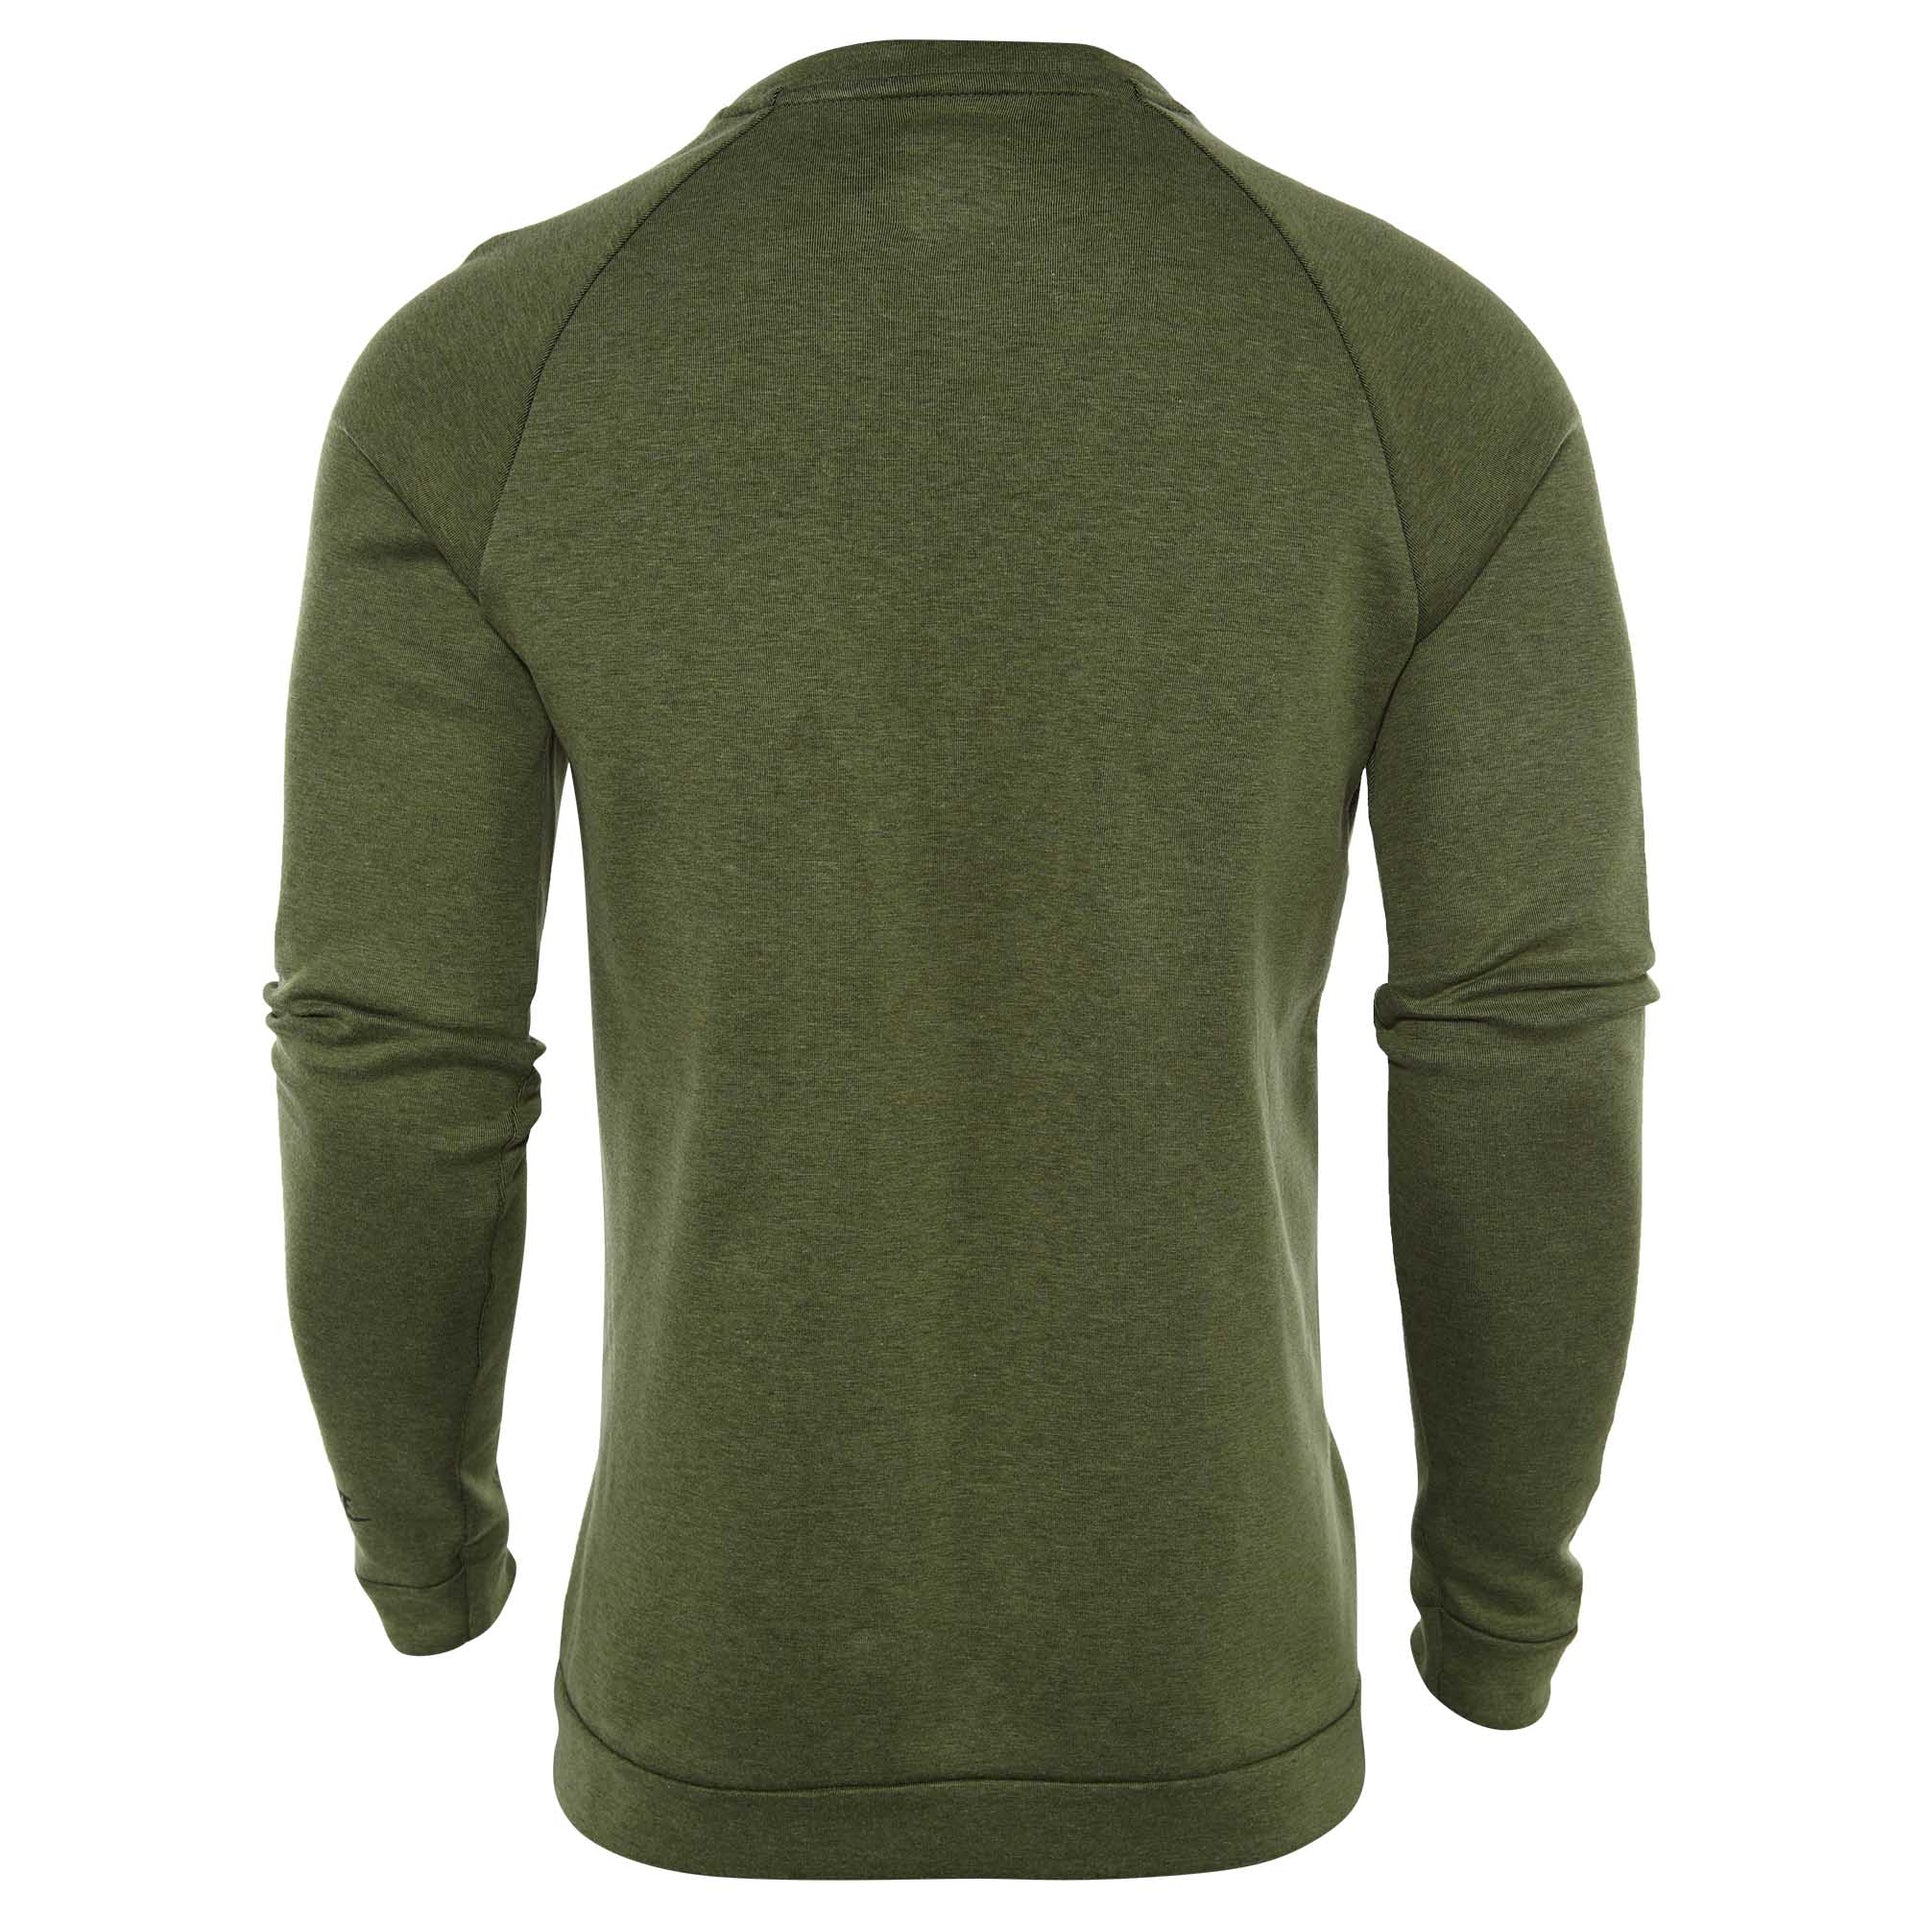 Nike Tech Fleece Crew Sweatshirt Mens Style : 805140